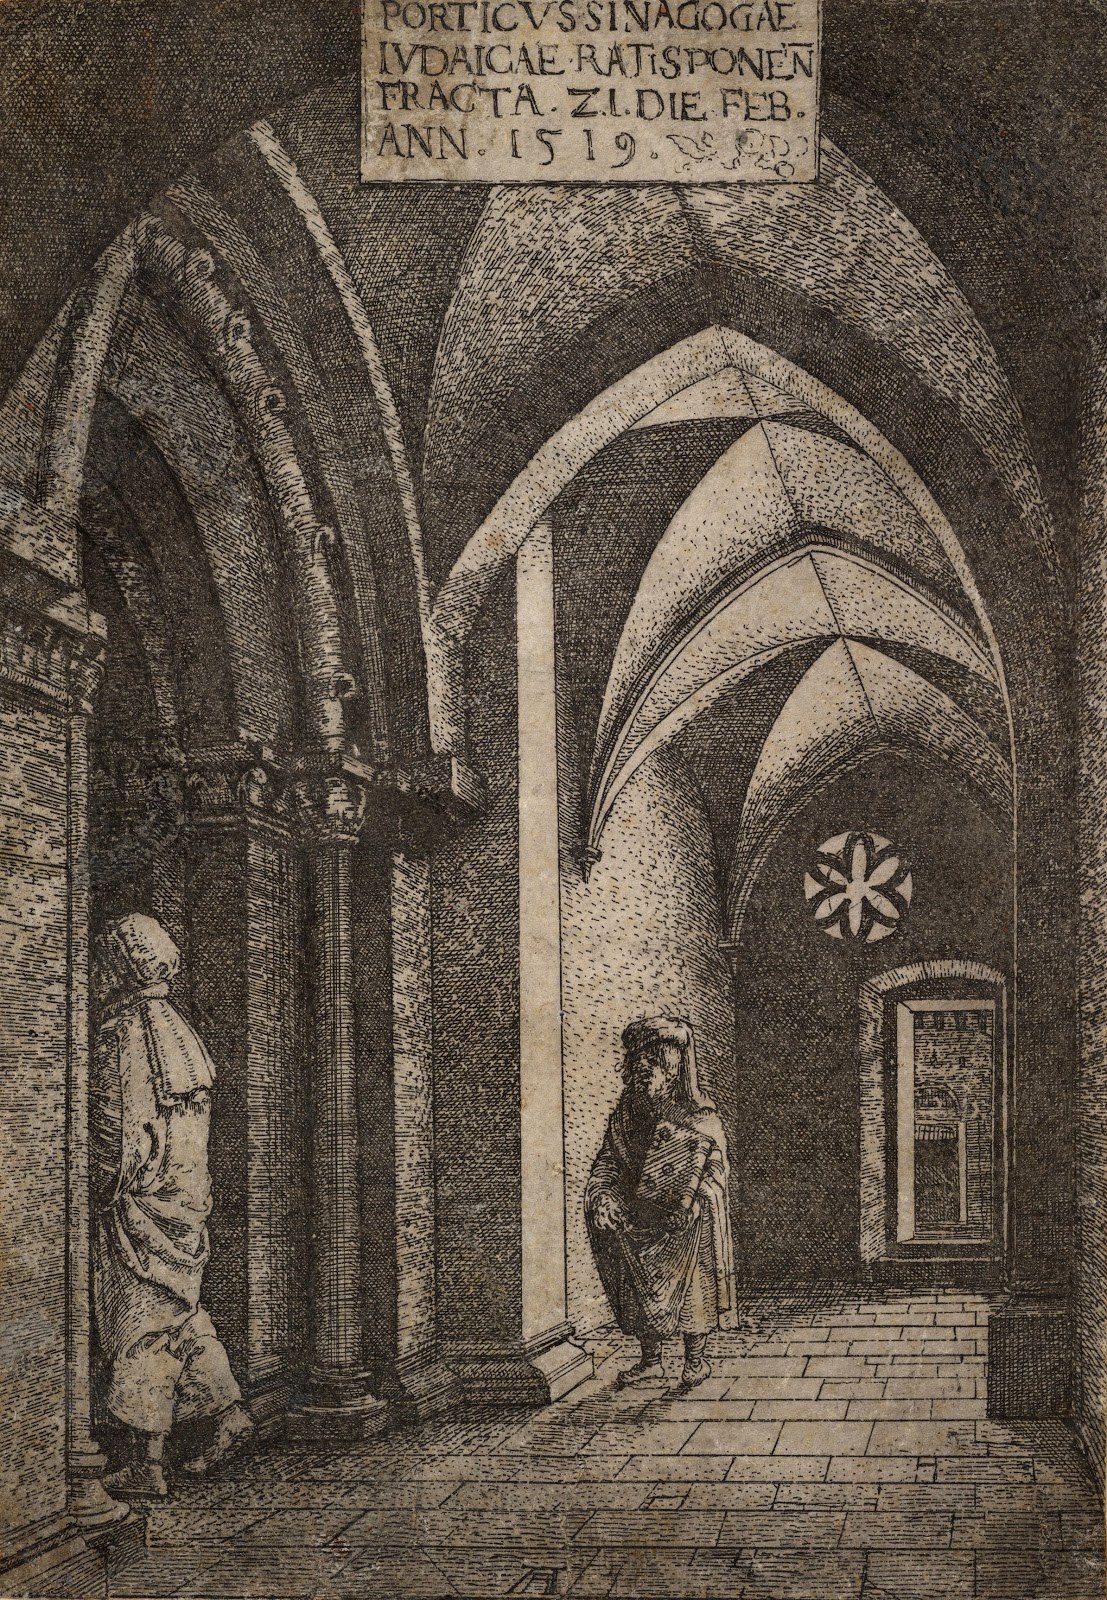 Albrecht+Altdorfer-1480-1538 (24).jpg